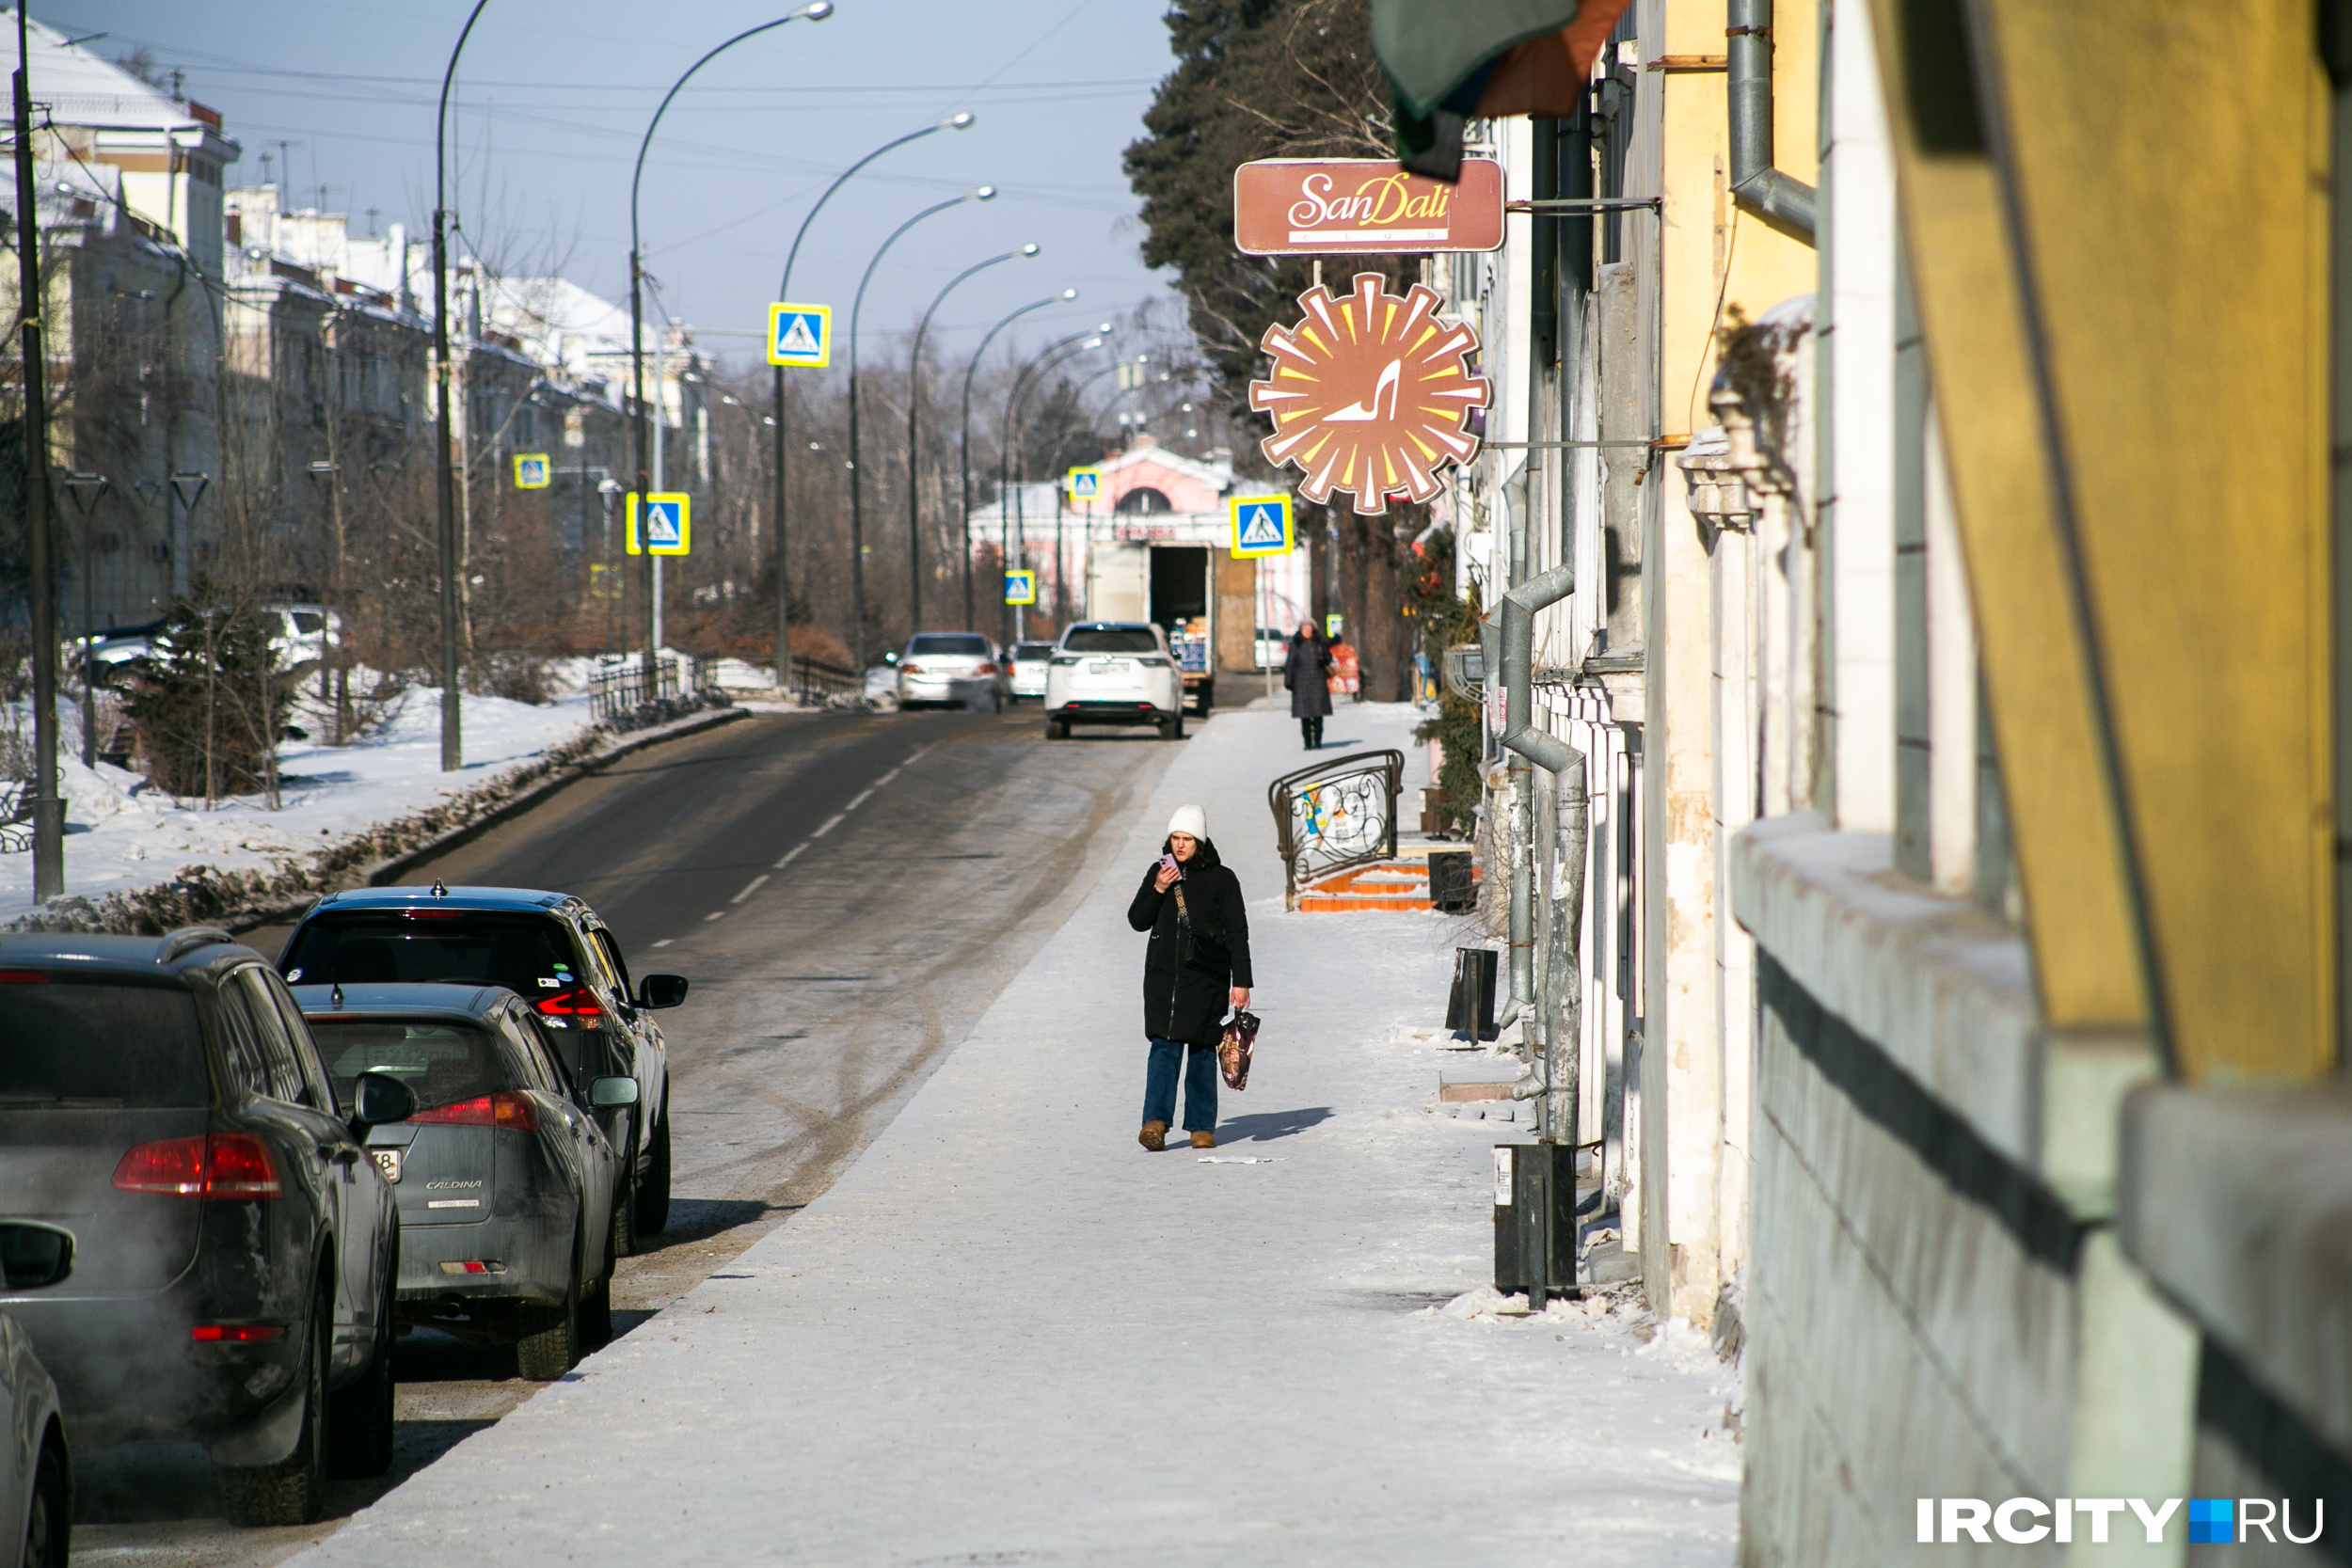 Вообще, центр Ангарска характерен своими идеально ровными прямыми улицами